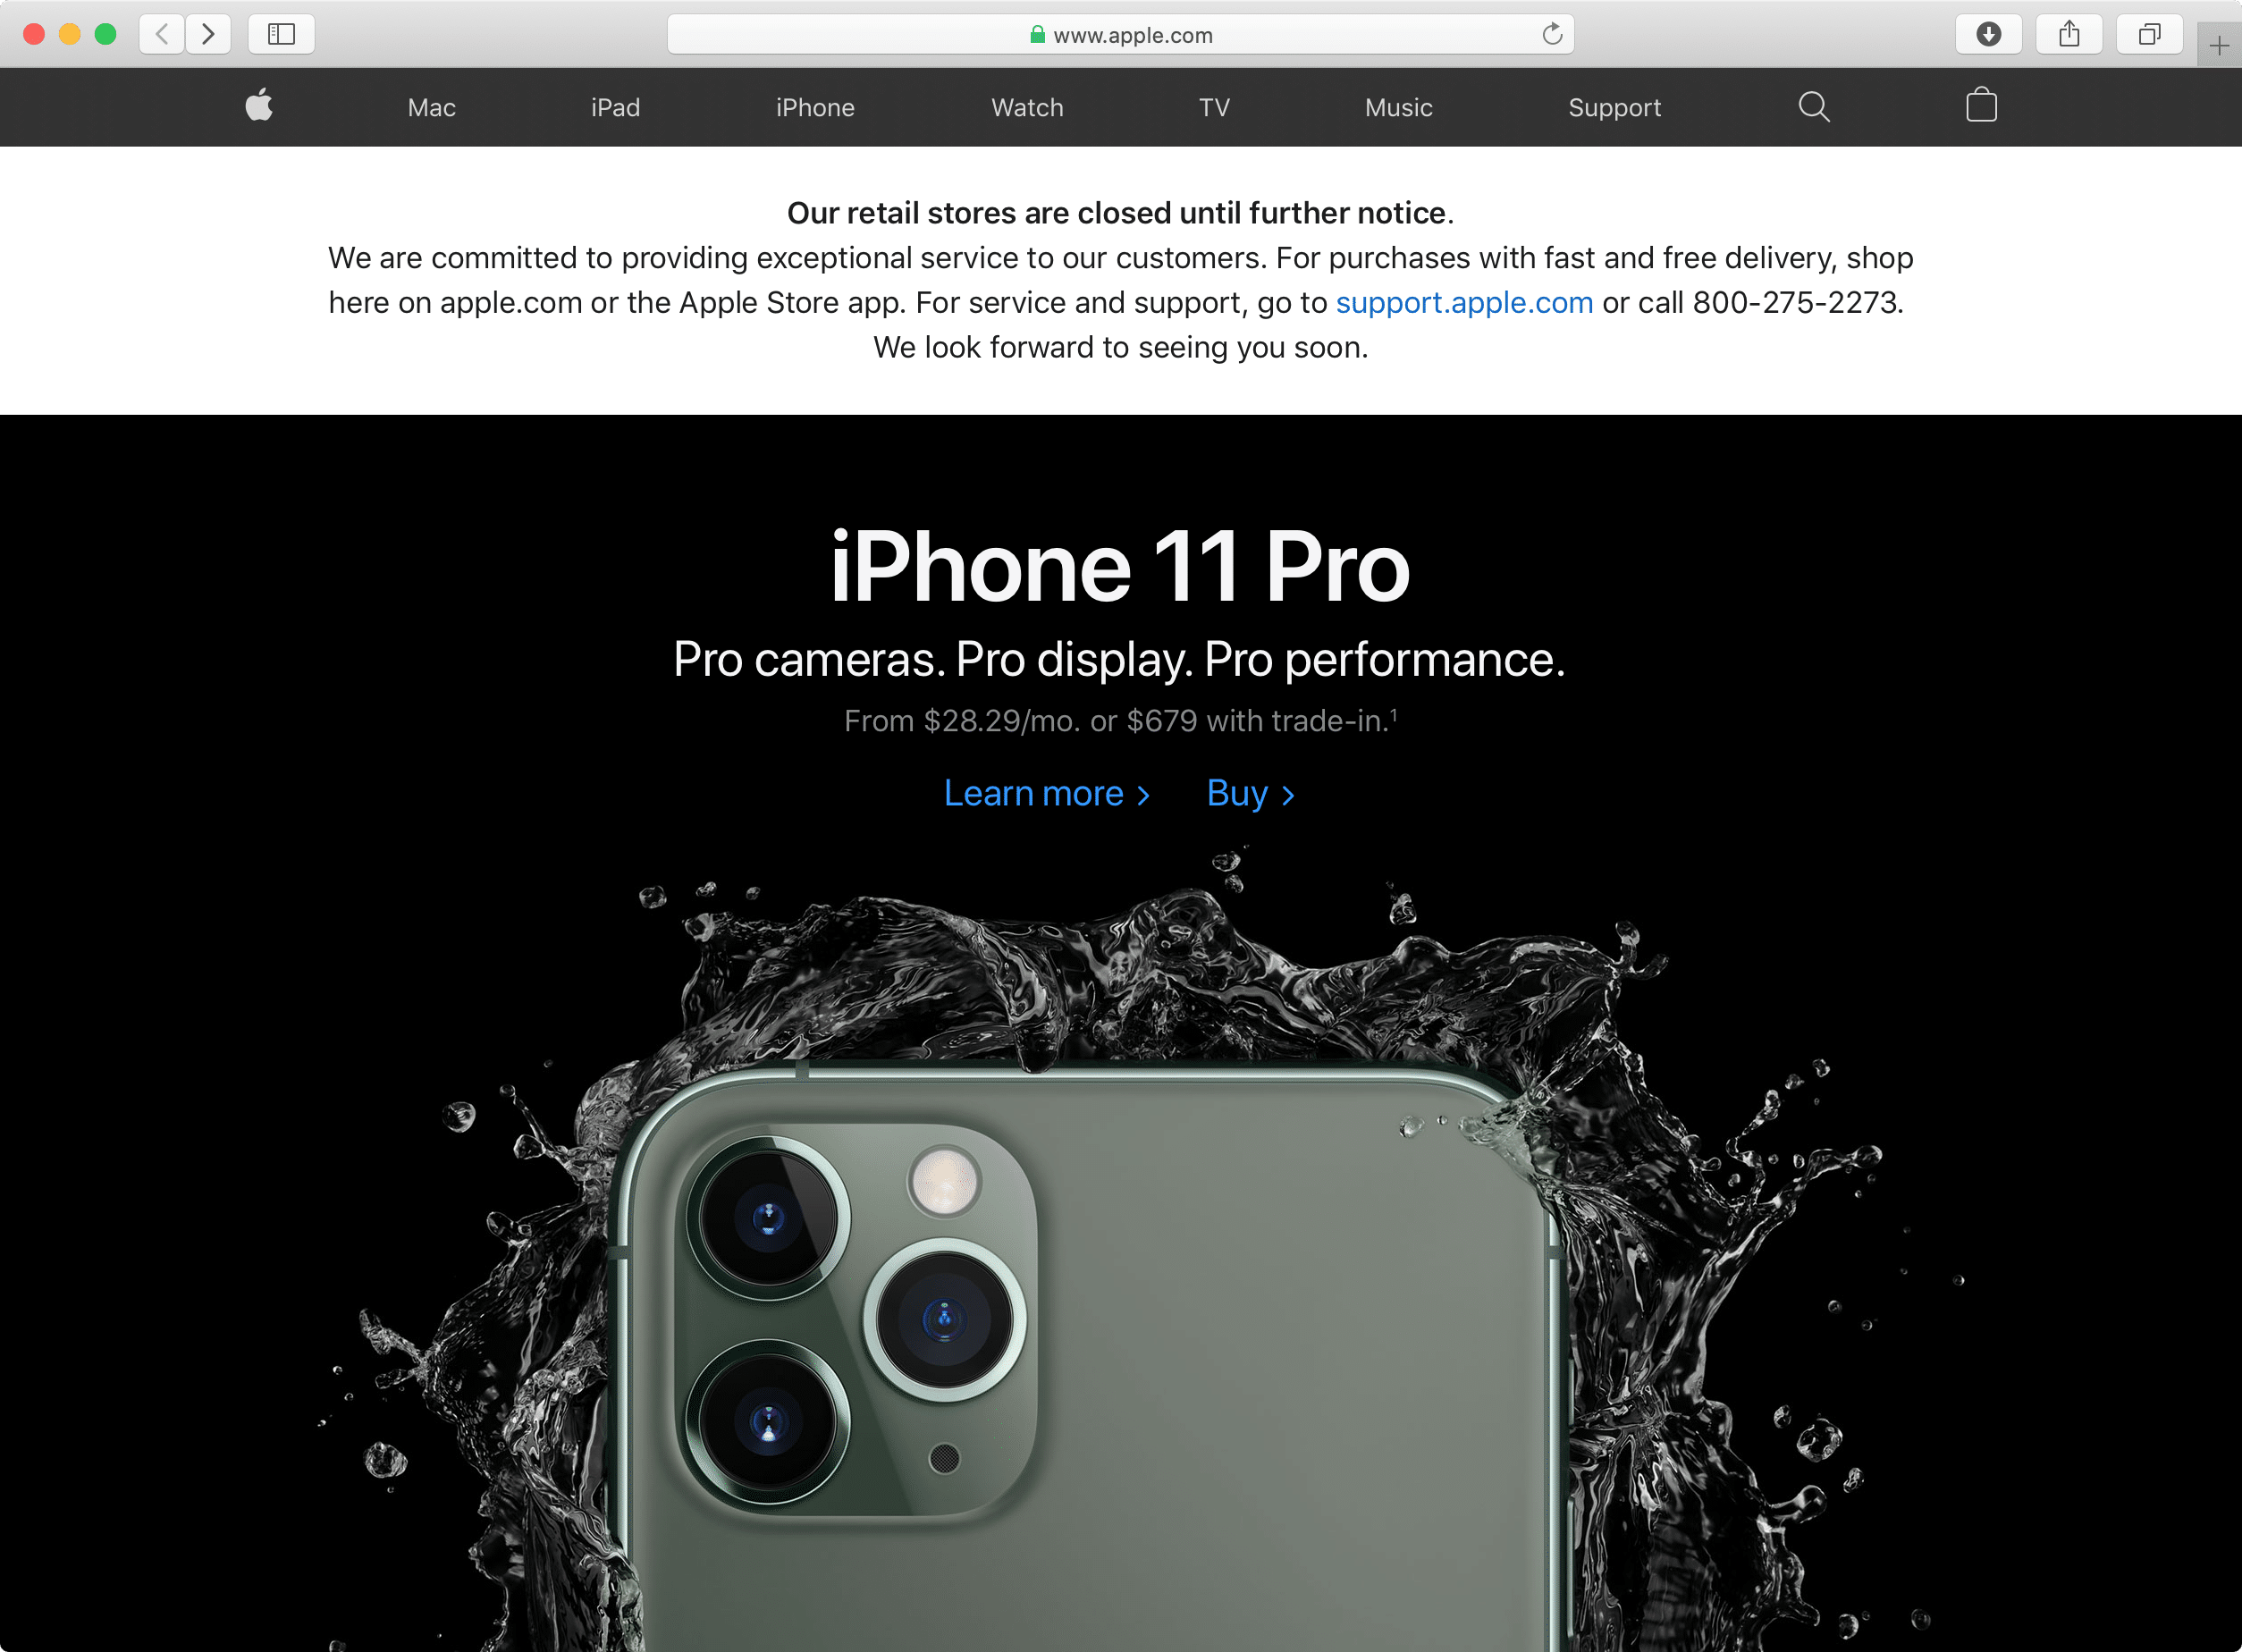 Aviso en Apple.com